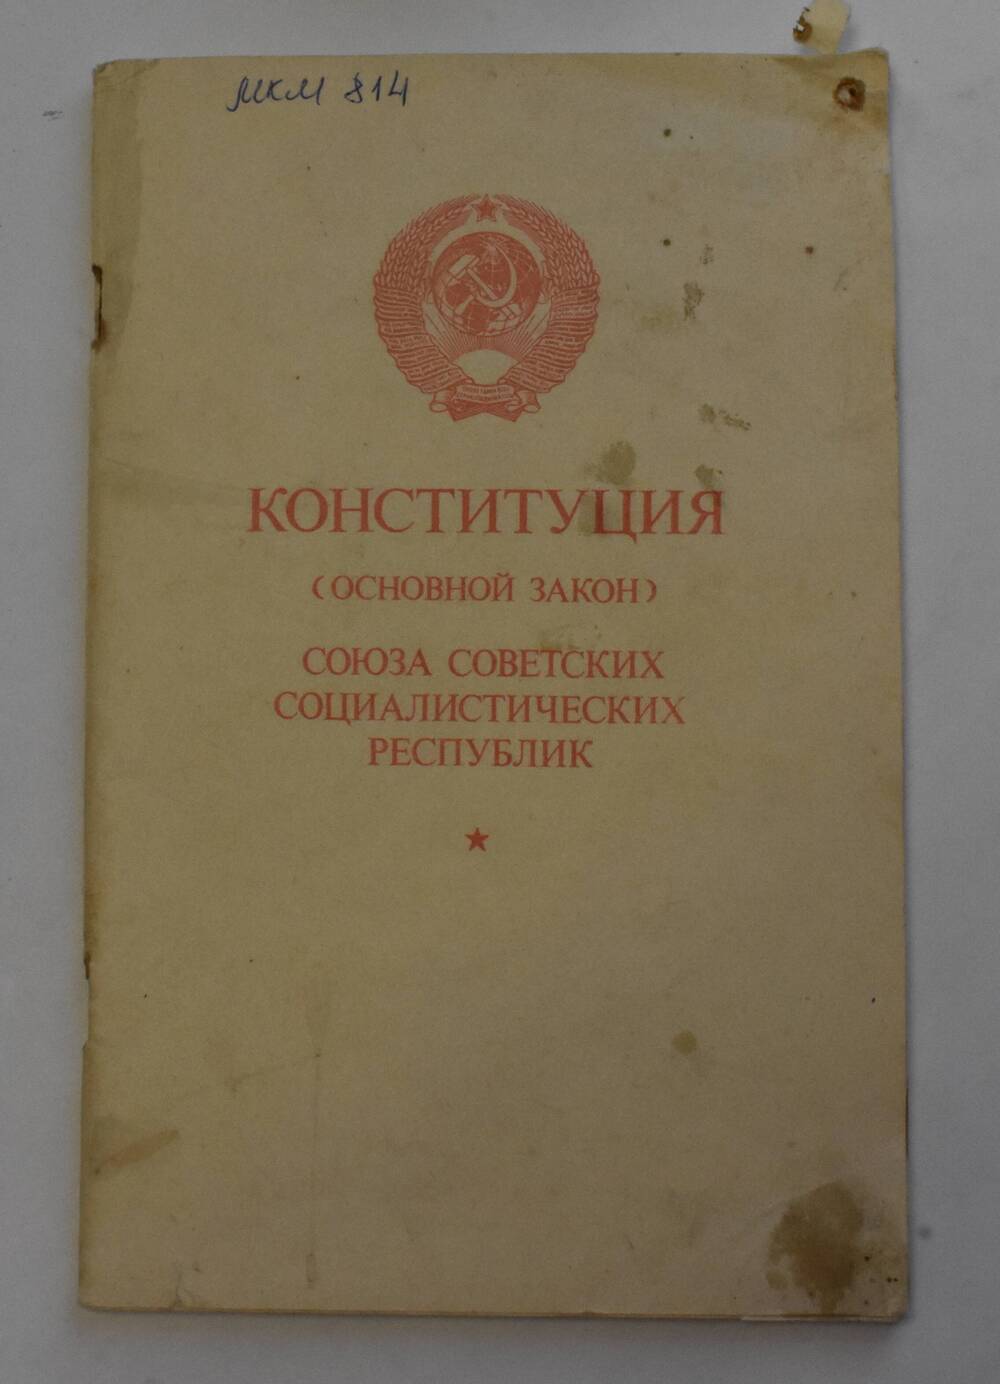 Конституция ( основной закон) Союза Советских Социалистических Республик